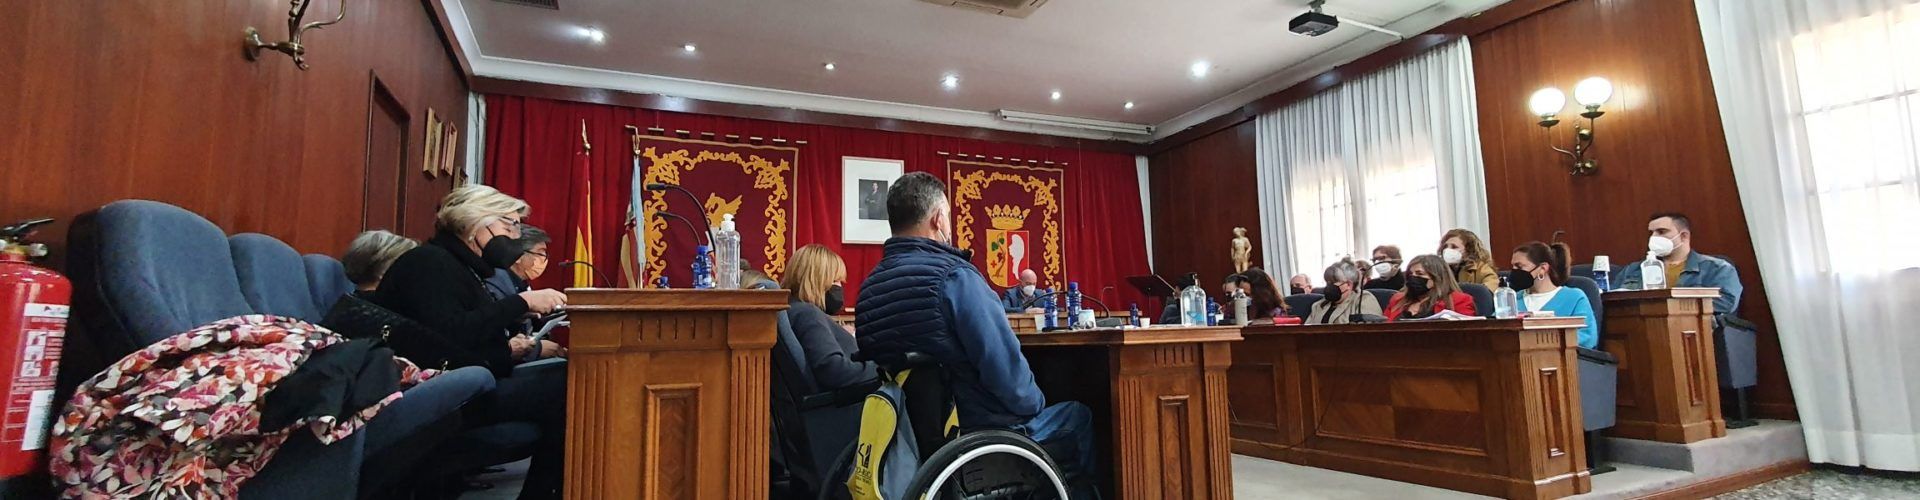 Vídeo: ple de l’Ajuntament de Vinaròs amb possessió dels nous regidors